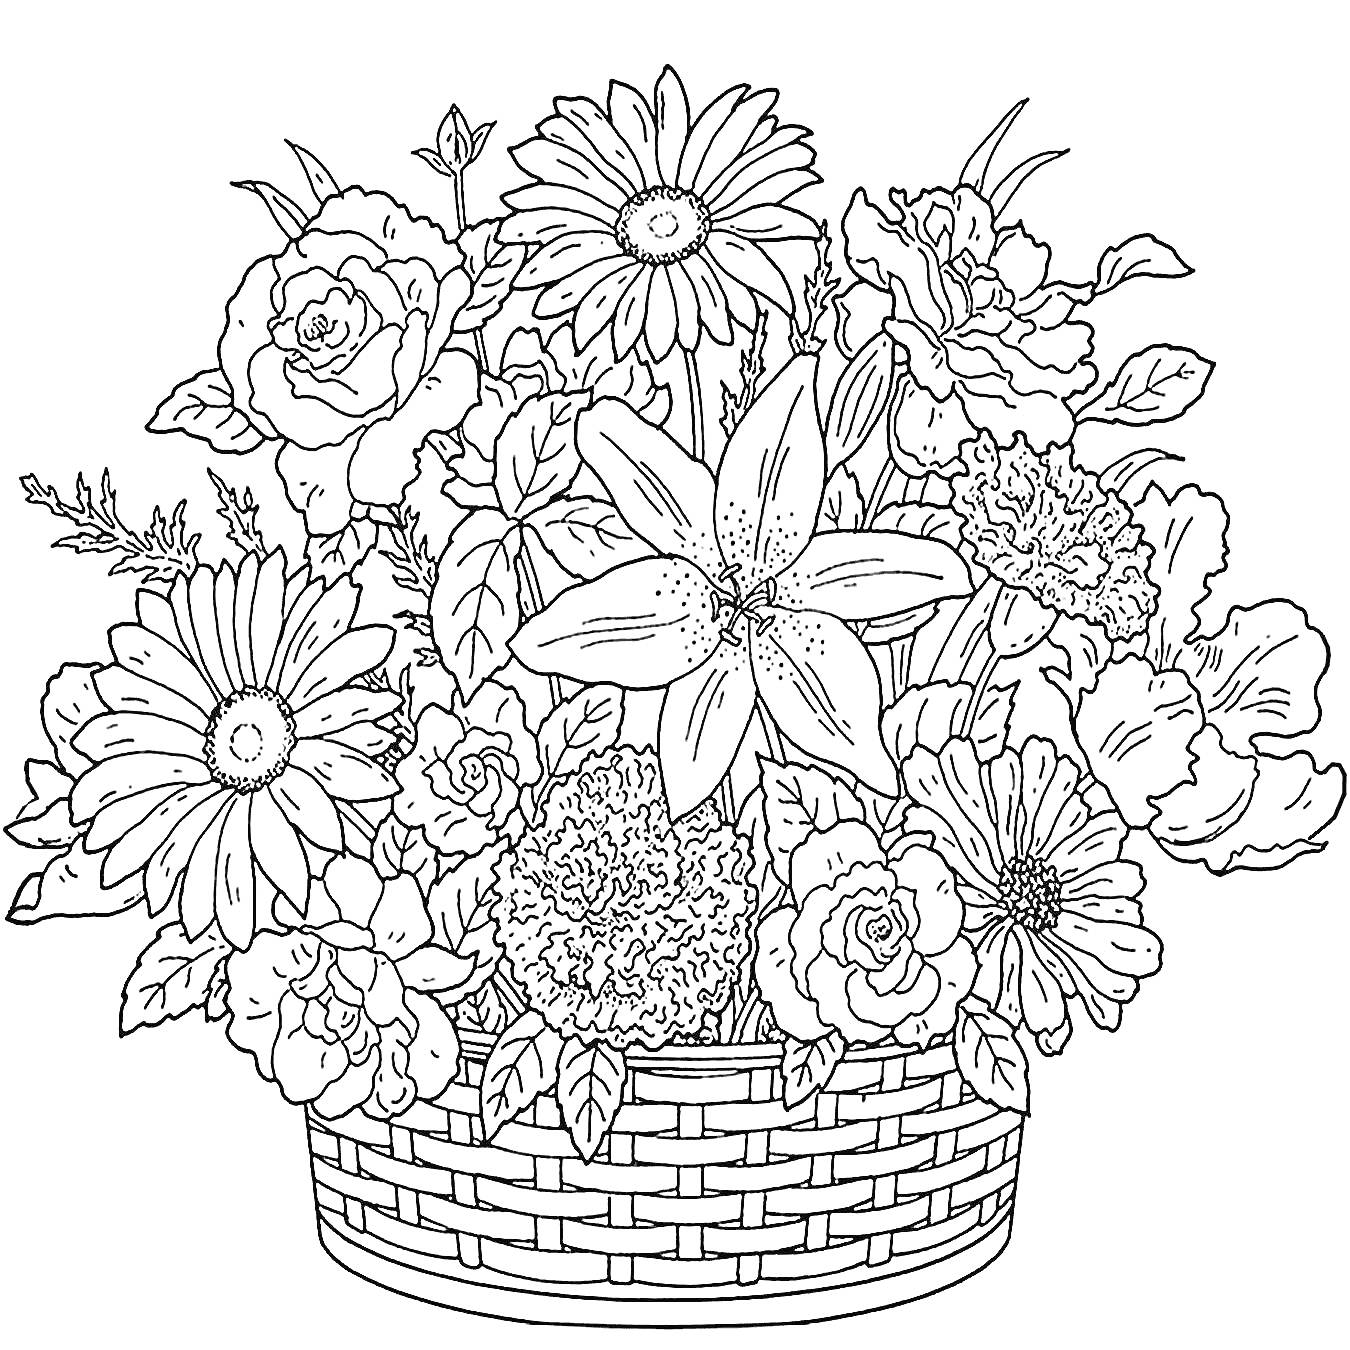 Раскраска Корзинка с разнообразными цветами, включая герберы, розы, лилии и листья